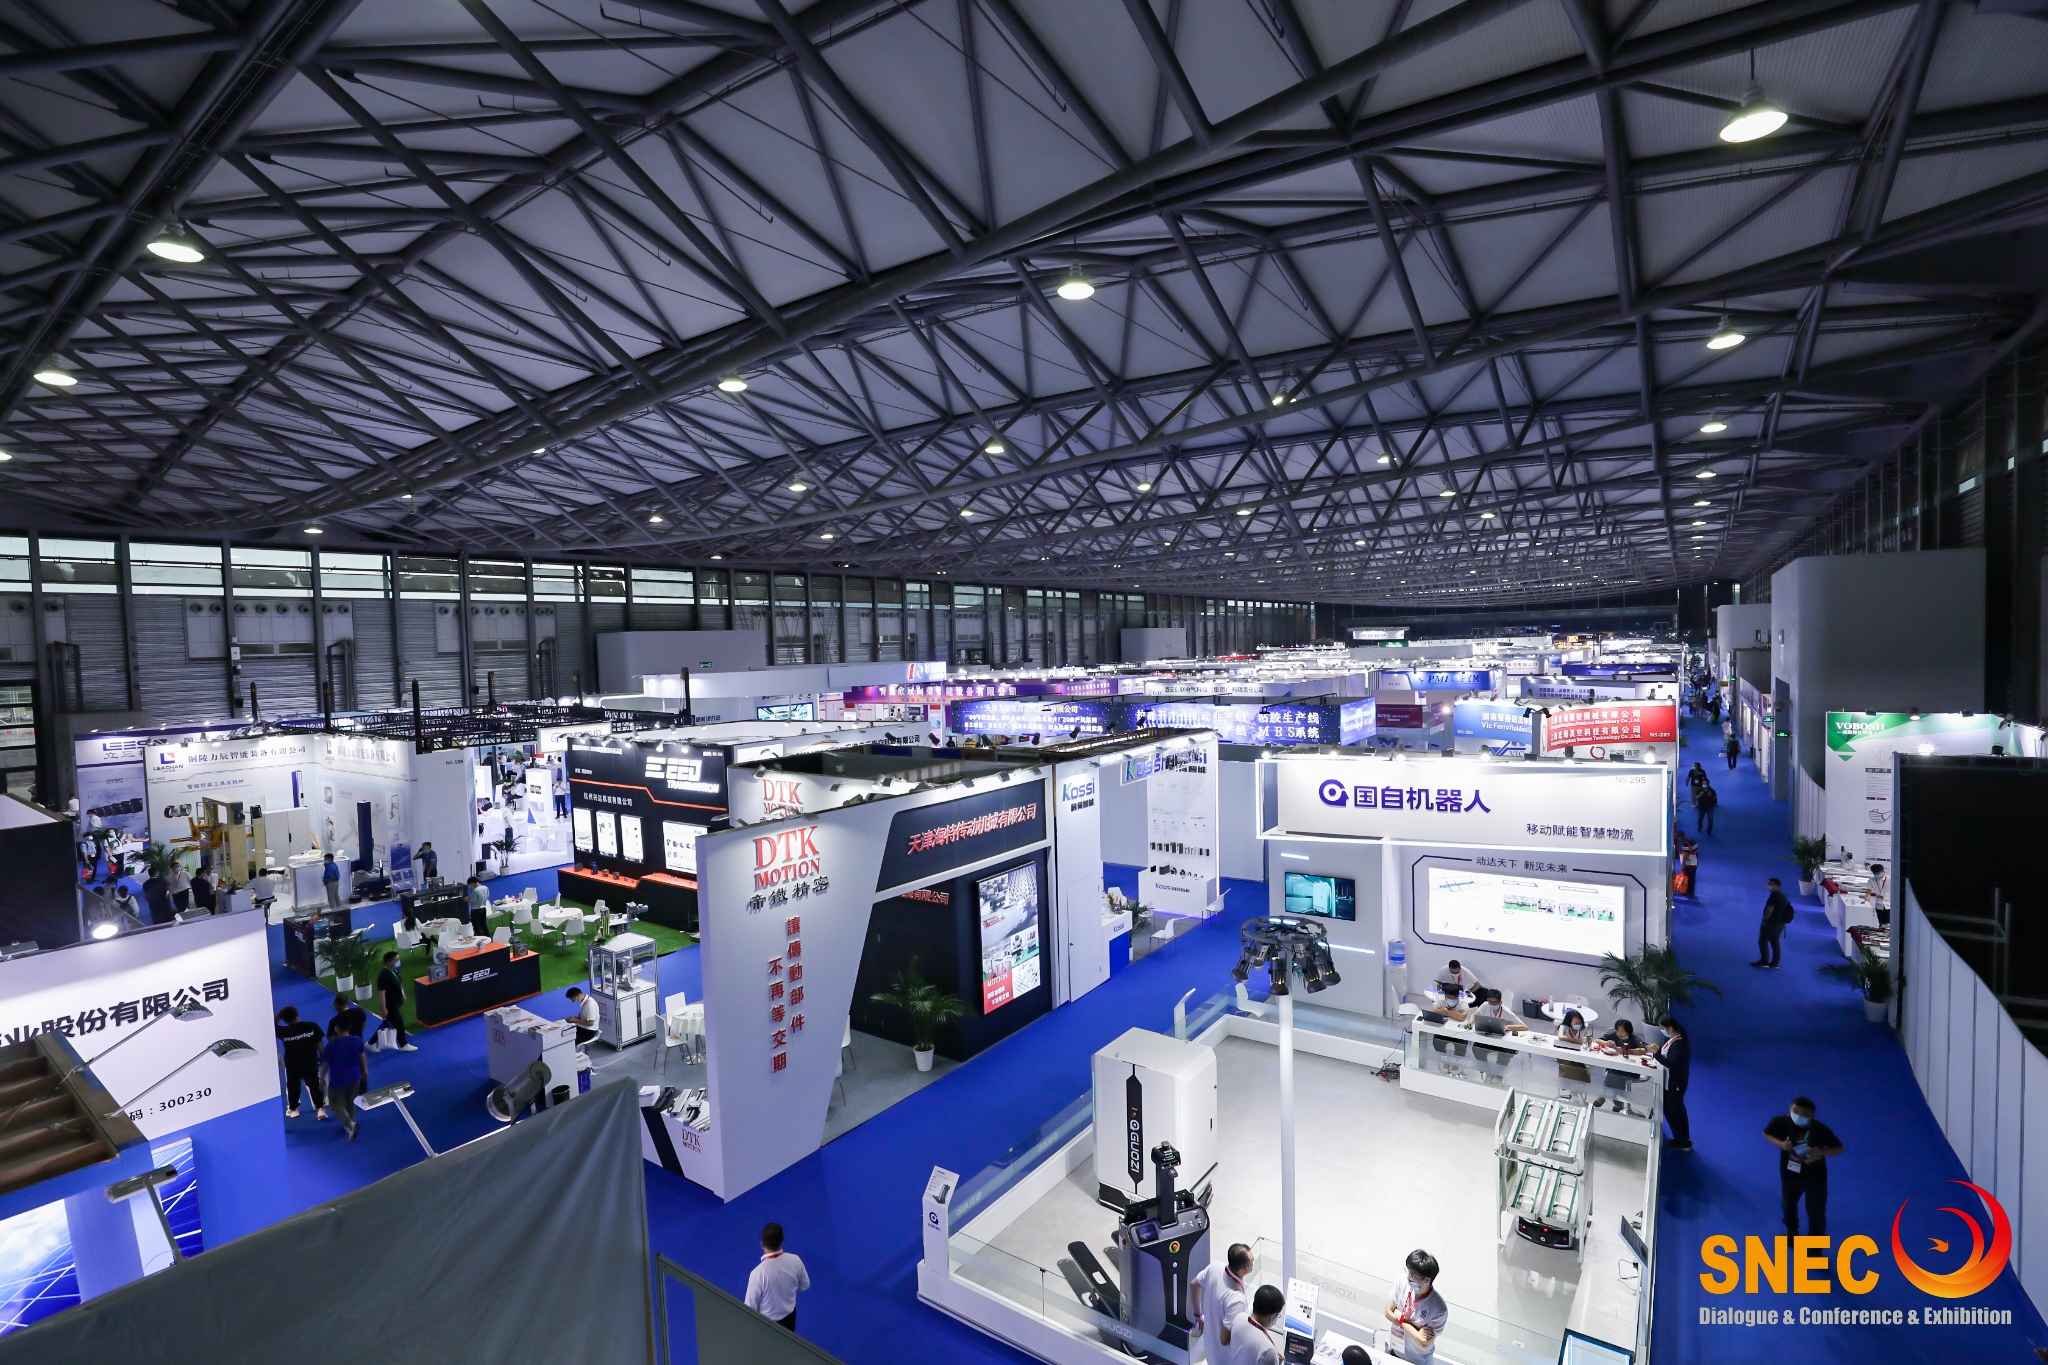 SNEC*六届2023国际氢能与燃料电池技术和装备及应用上海大会 邀请函